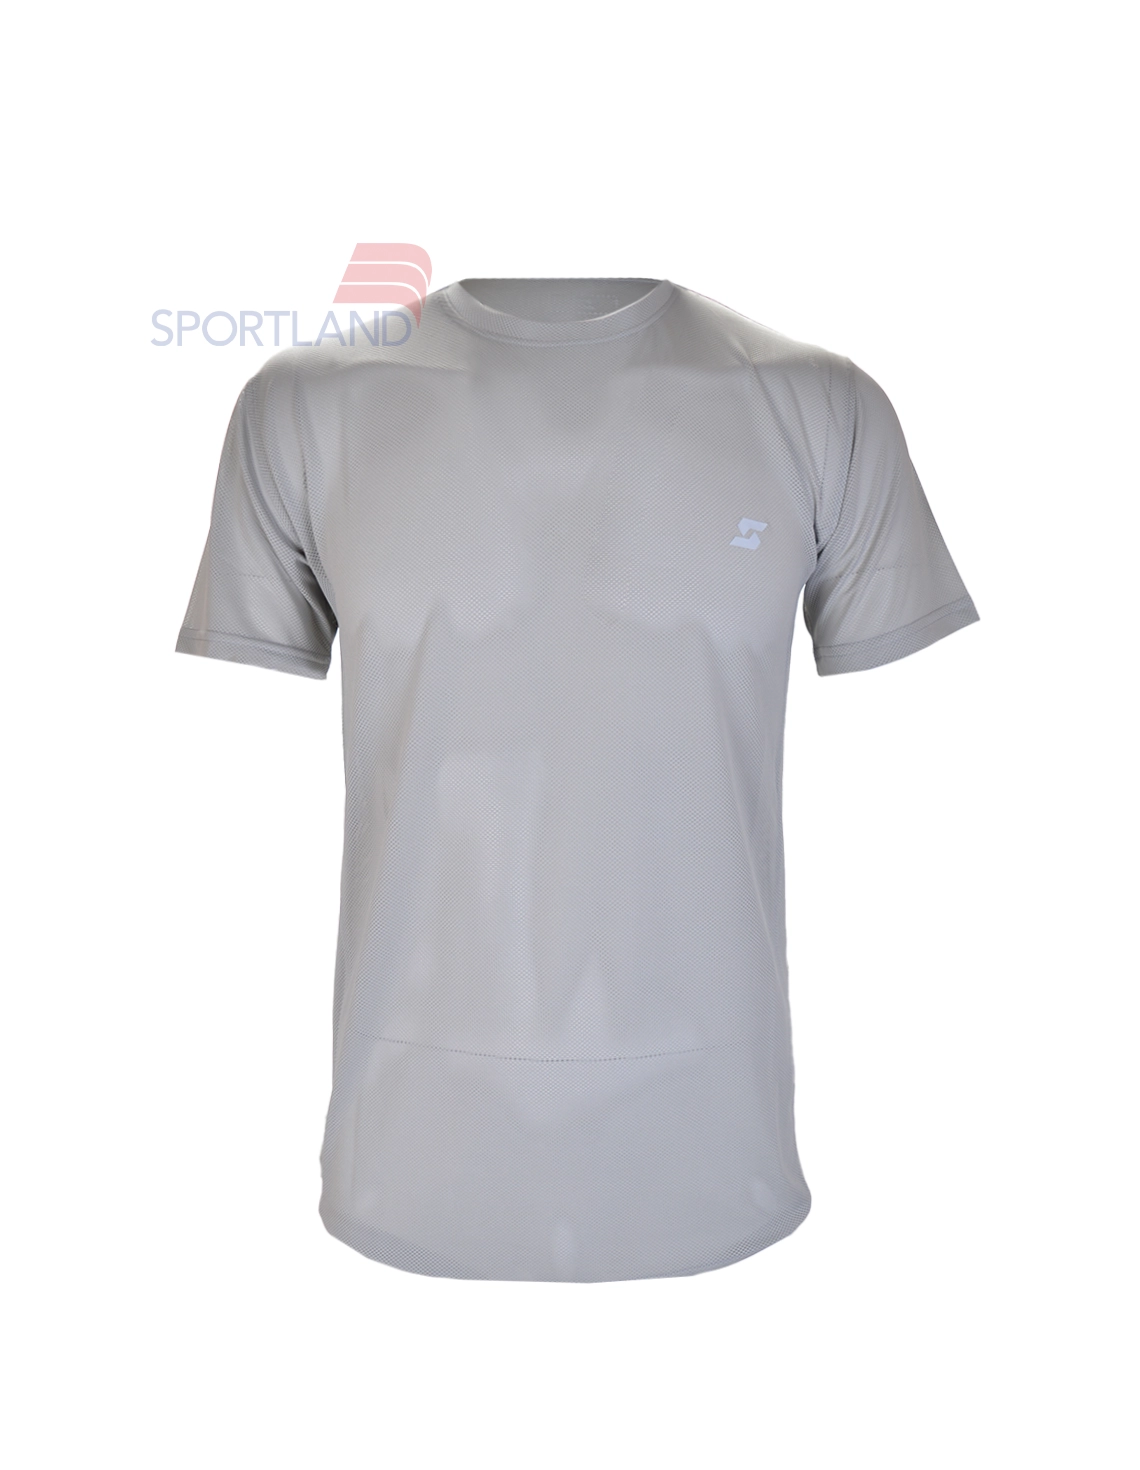 تی شرت ورزشی مردانه اسپورتلند FlexFit M